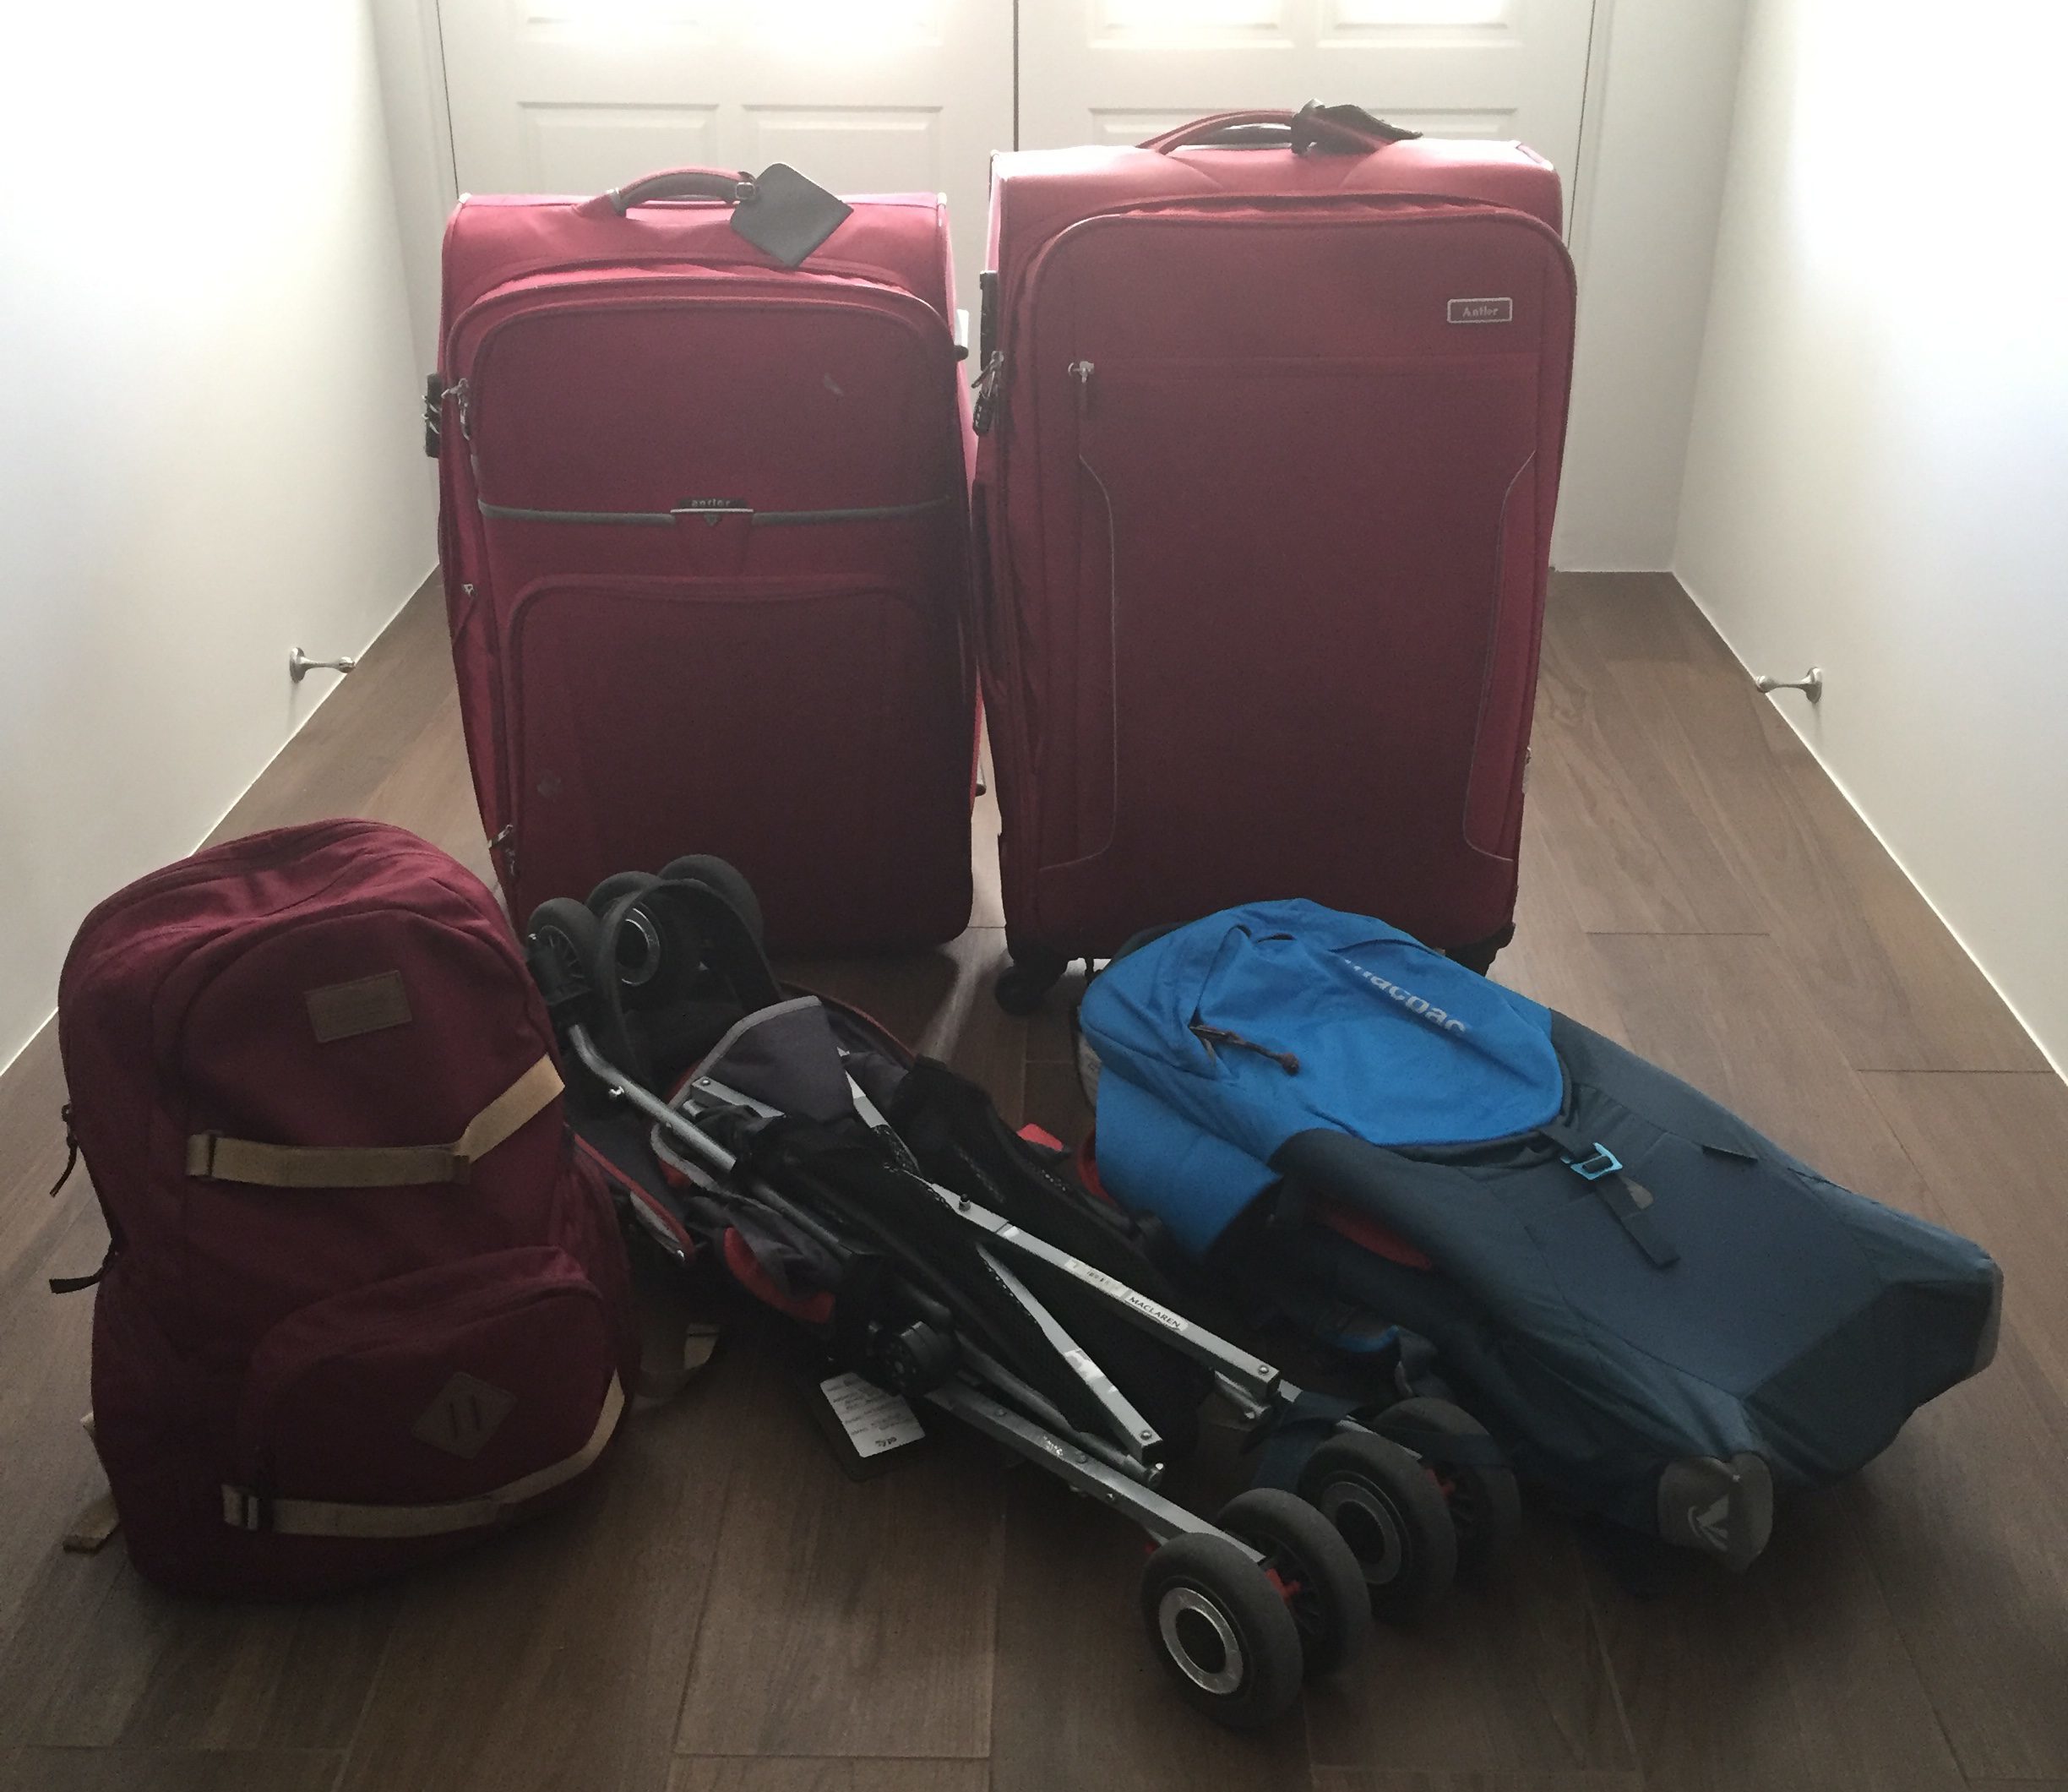 bags make travel easier